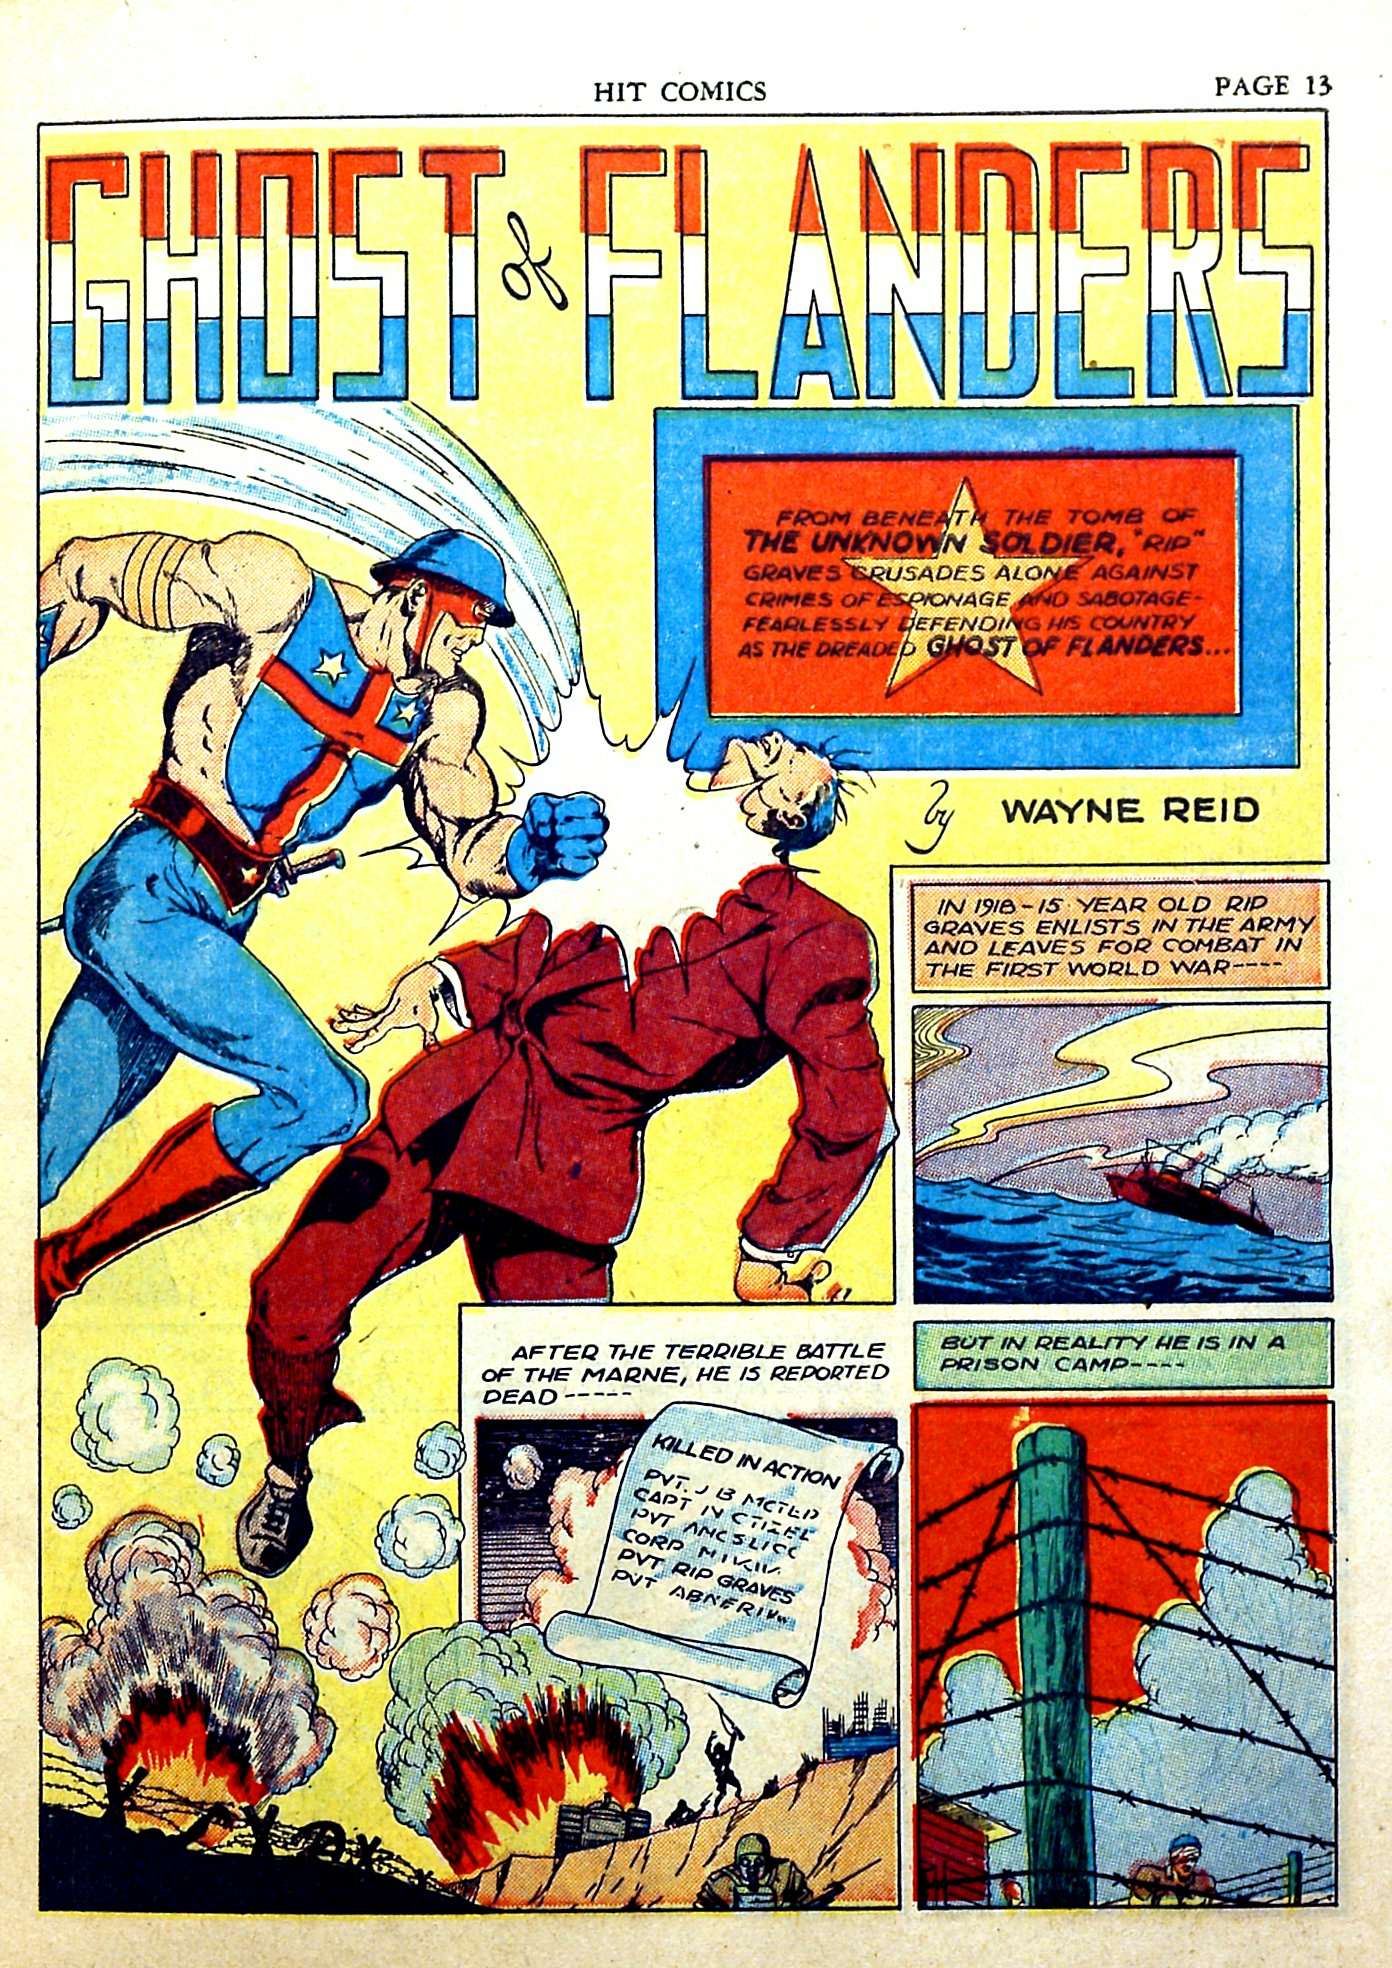 The Ghost of Flanders – Hit Comics #18, December 1941 | Steve ...